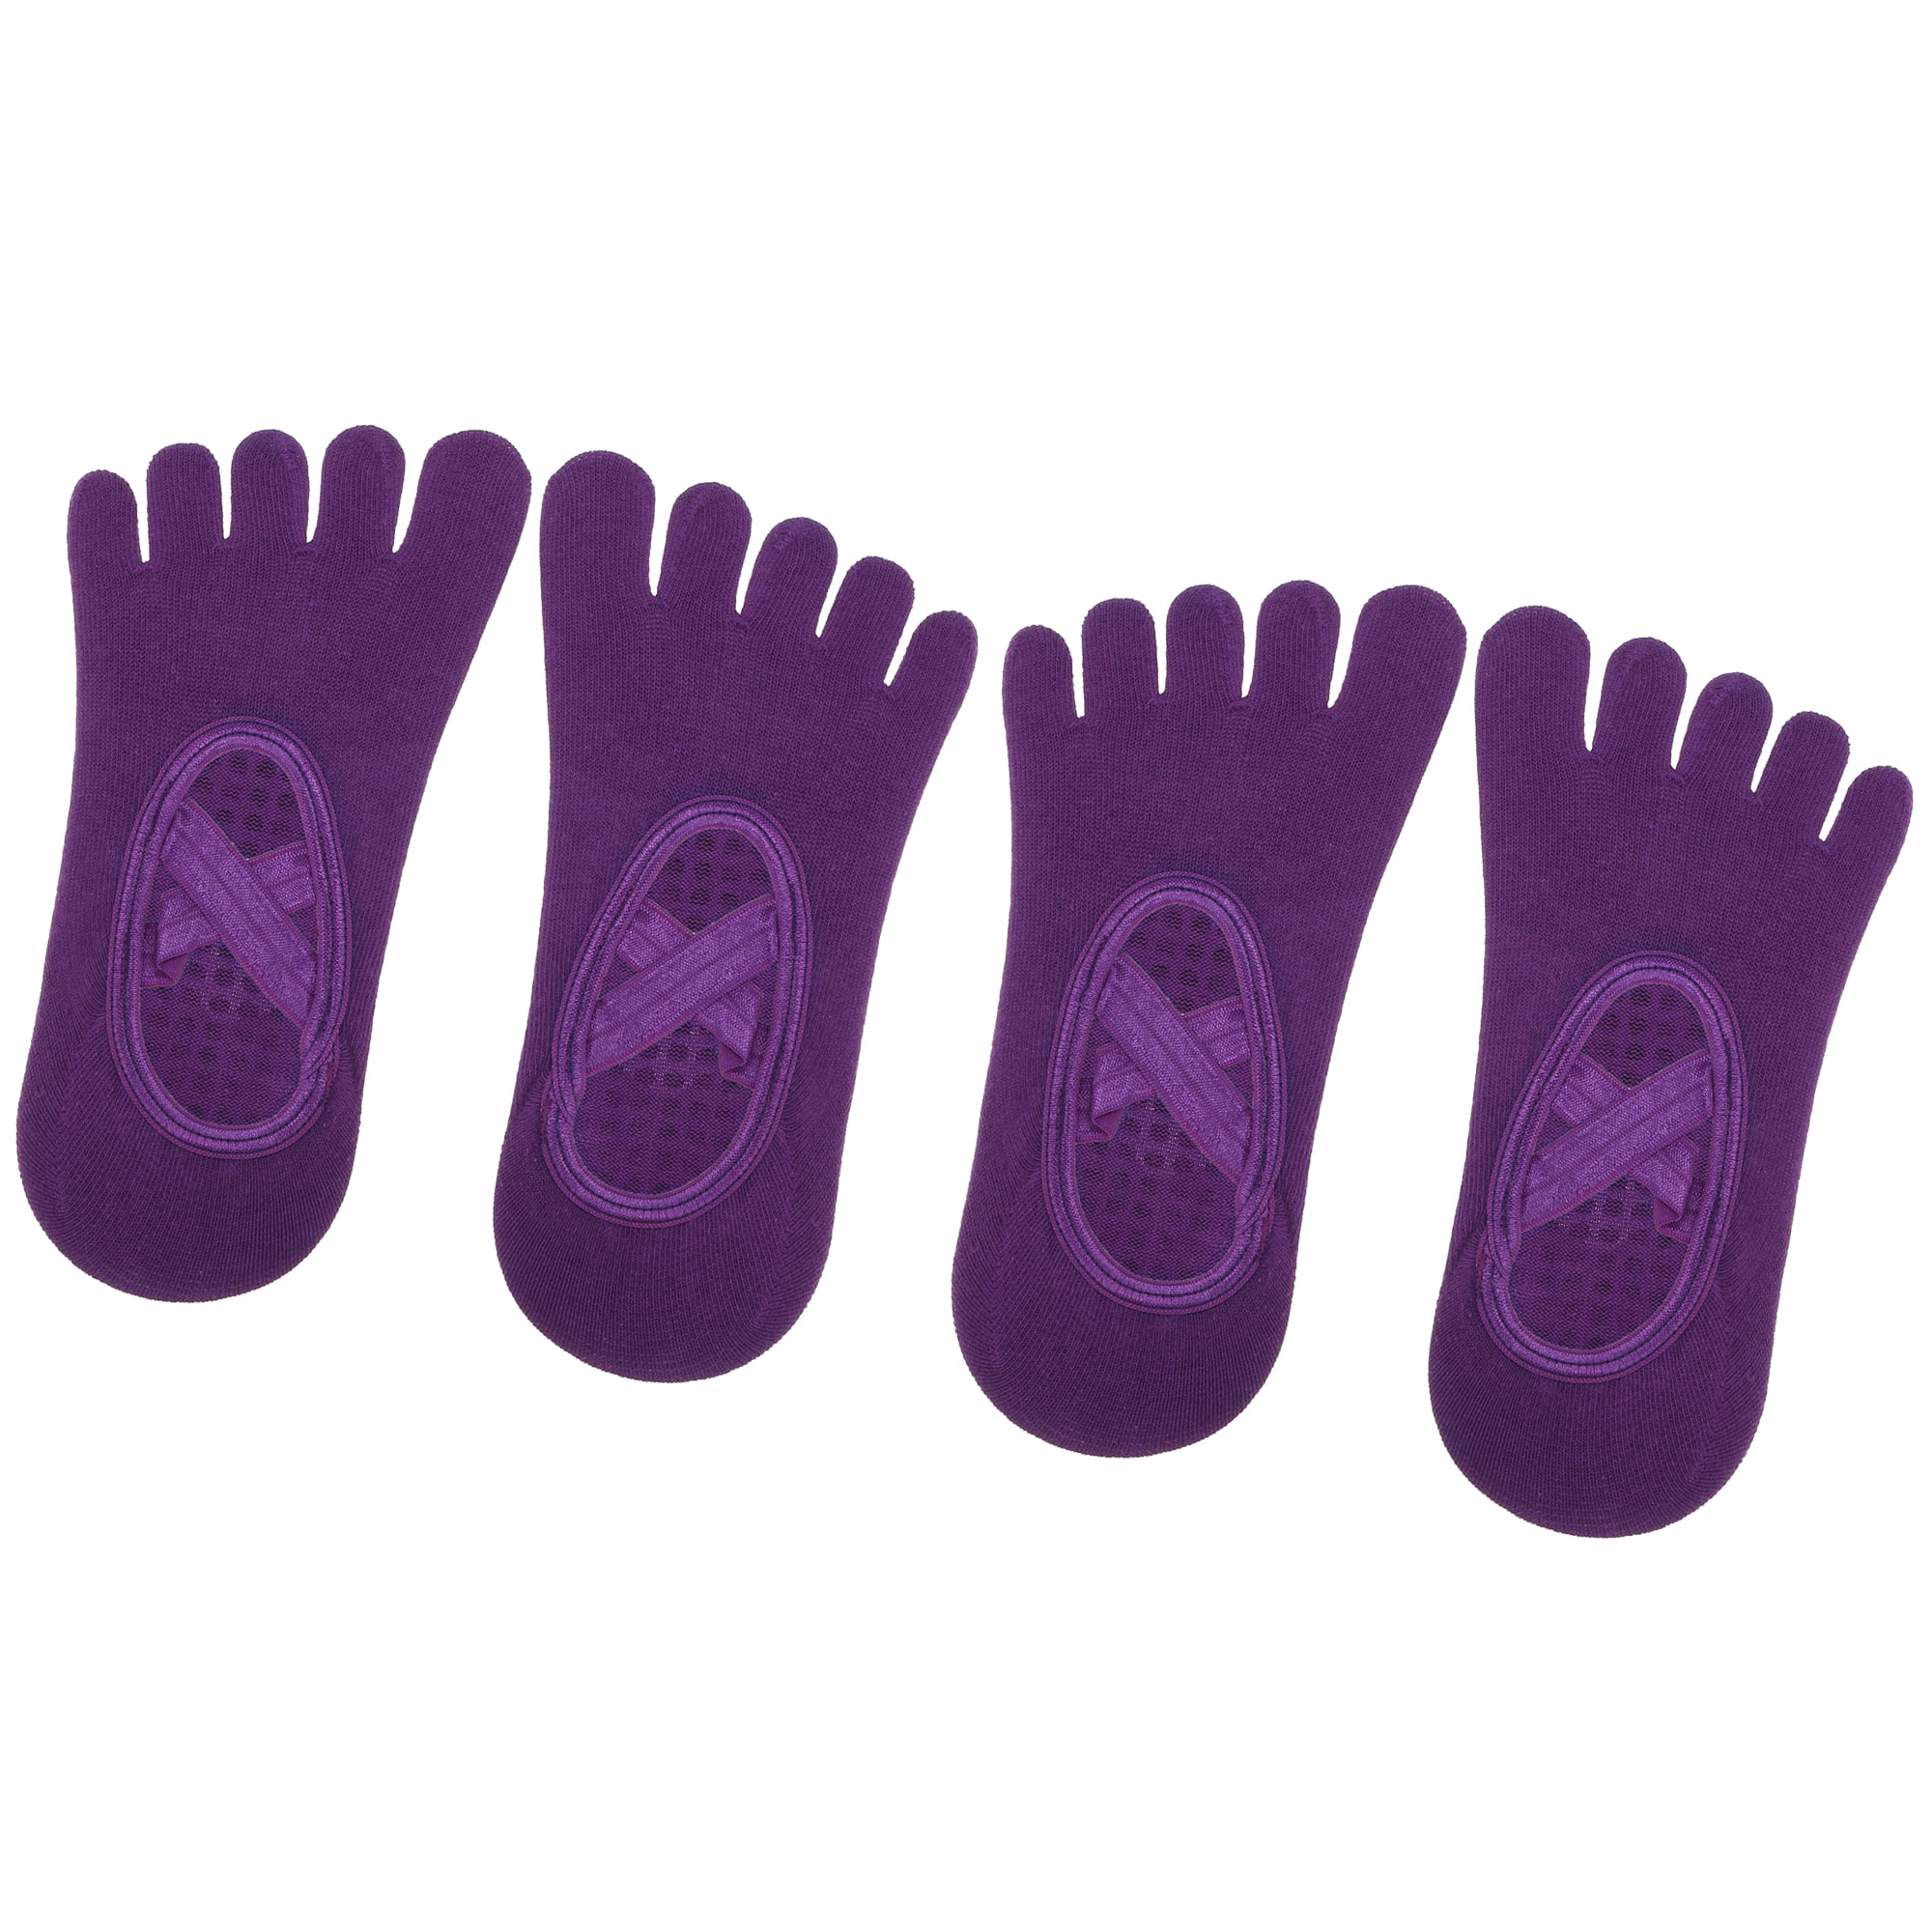 Unique Bargains 2 Pair Yoga Socks Five Toe Socks Non Slip Pilates Barre  Ballet Socks Dark Purple for Women with Grips